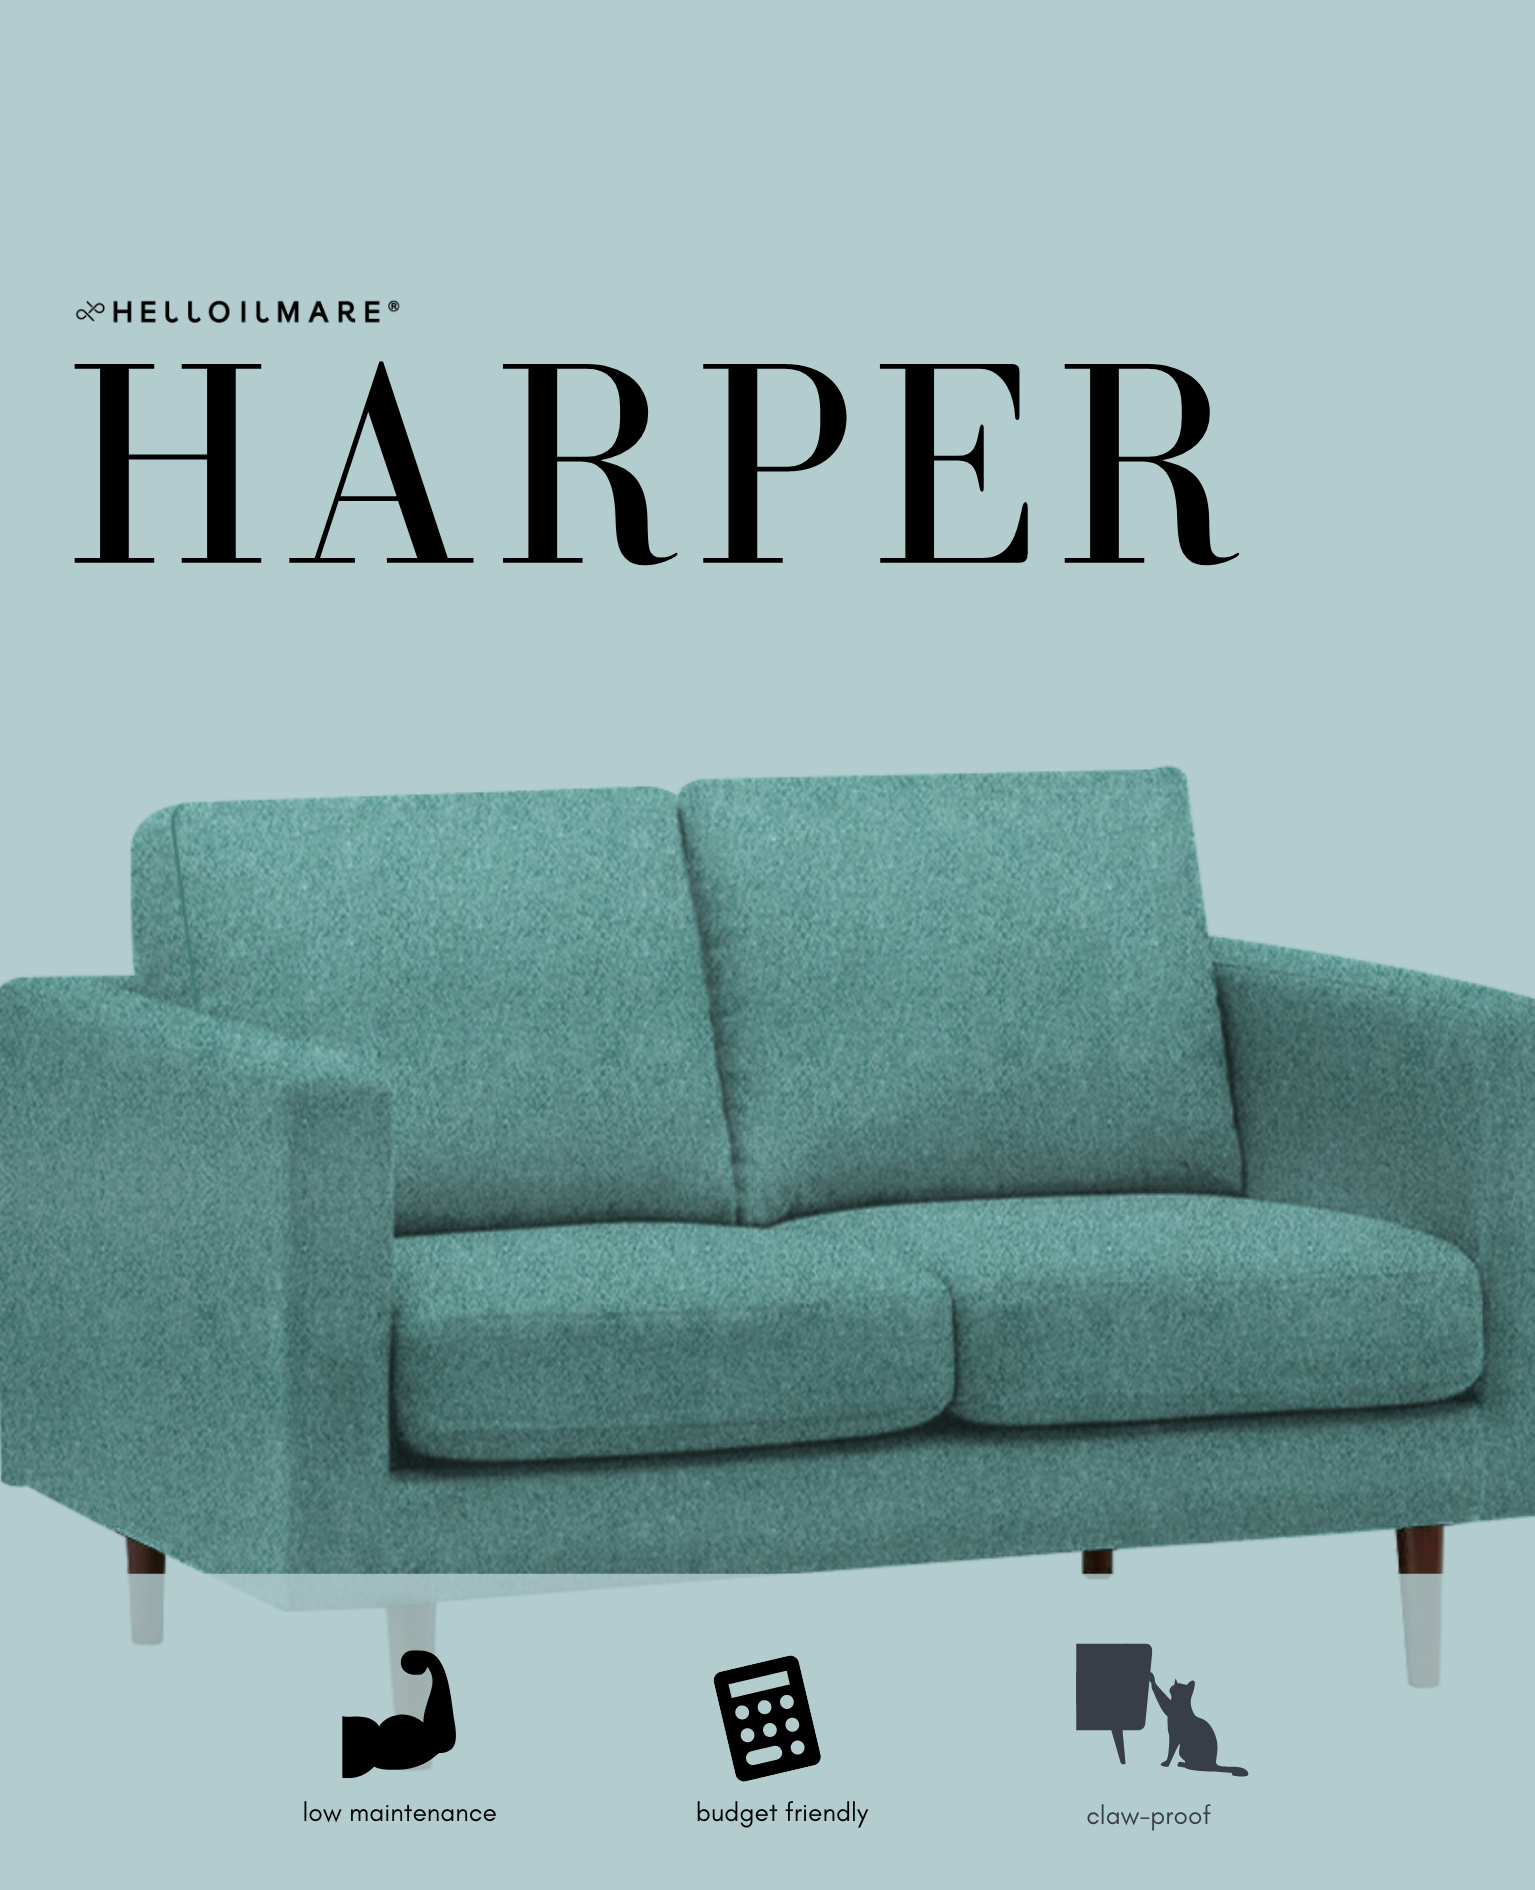 4 Seater Harper - Helloilmare